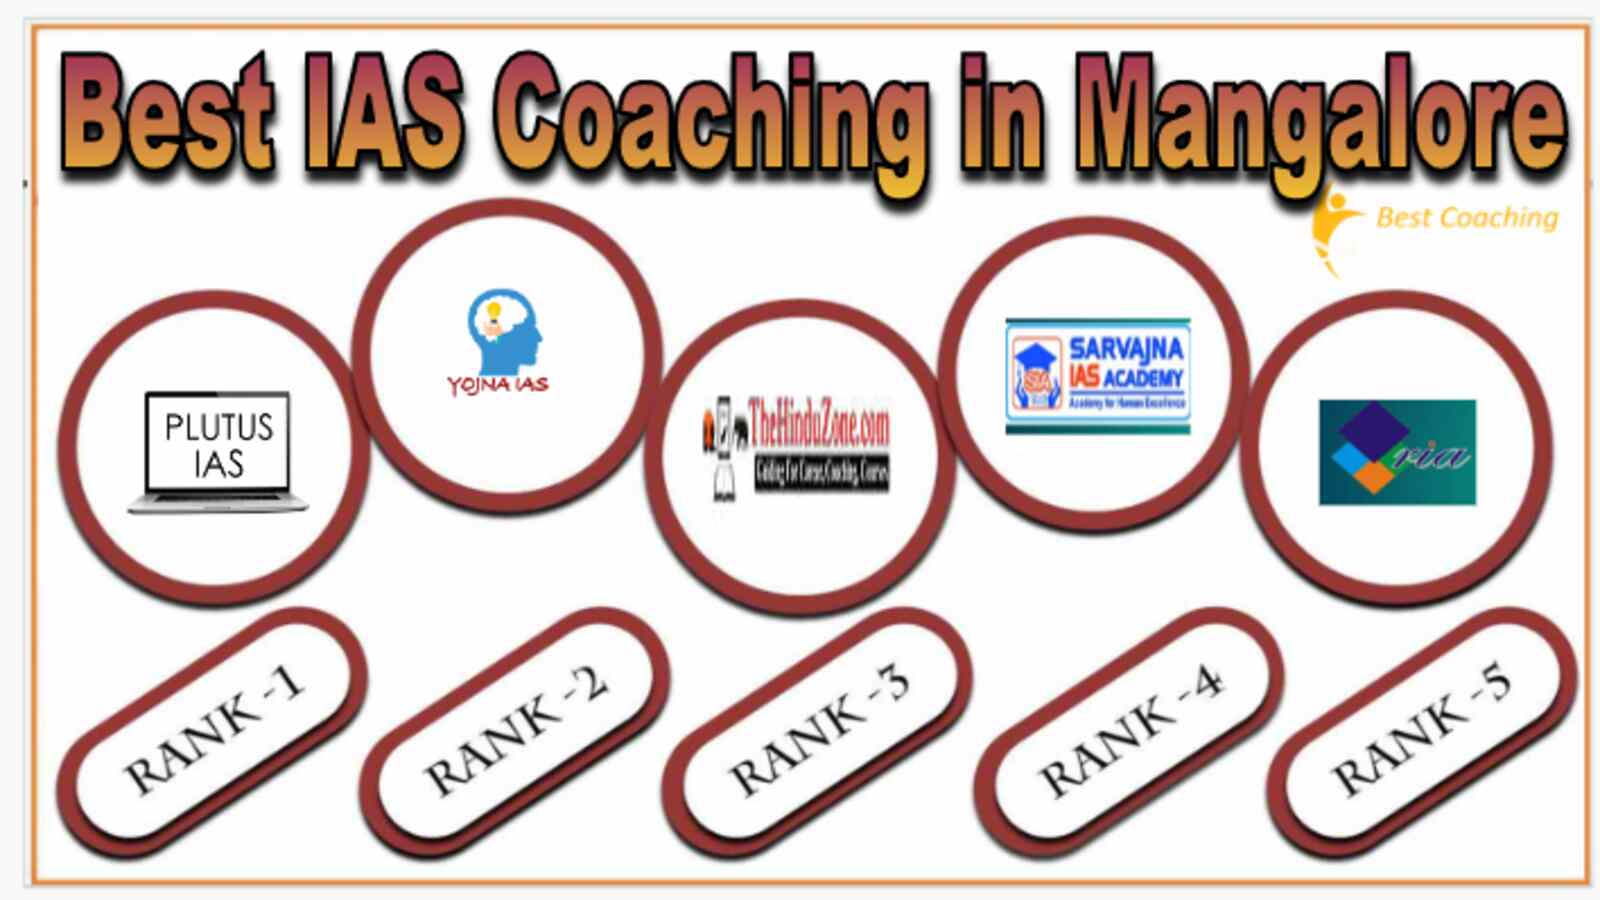 Best IAS Coaching Institute in Mangalore